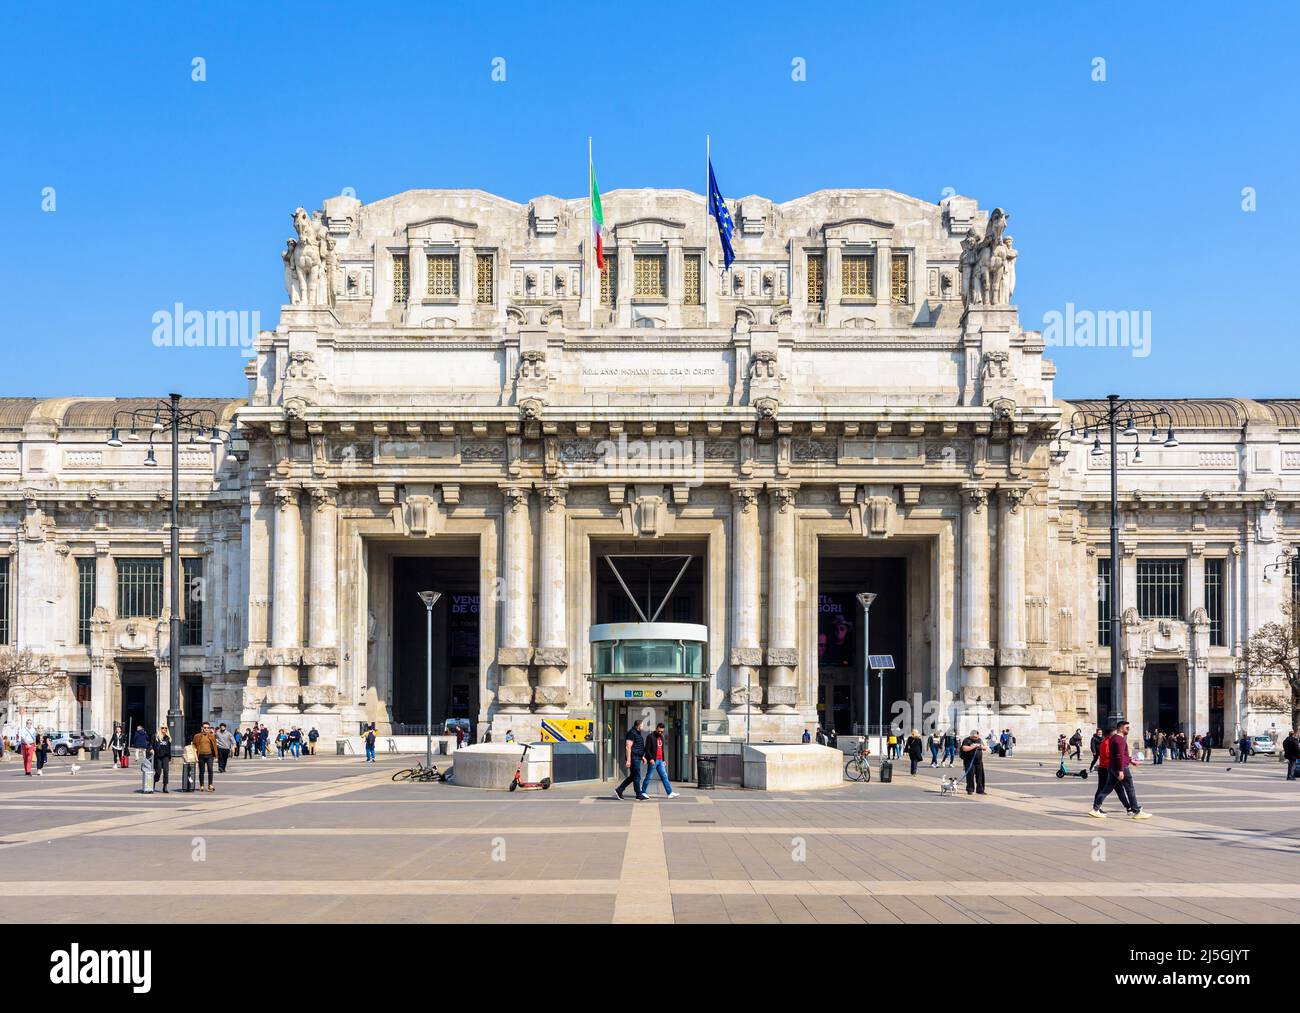 Vista frontal del monumental pórtico de entrada de la estación de tren Milano Centrale en Milán, Italia. Foto de stock